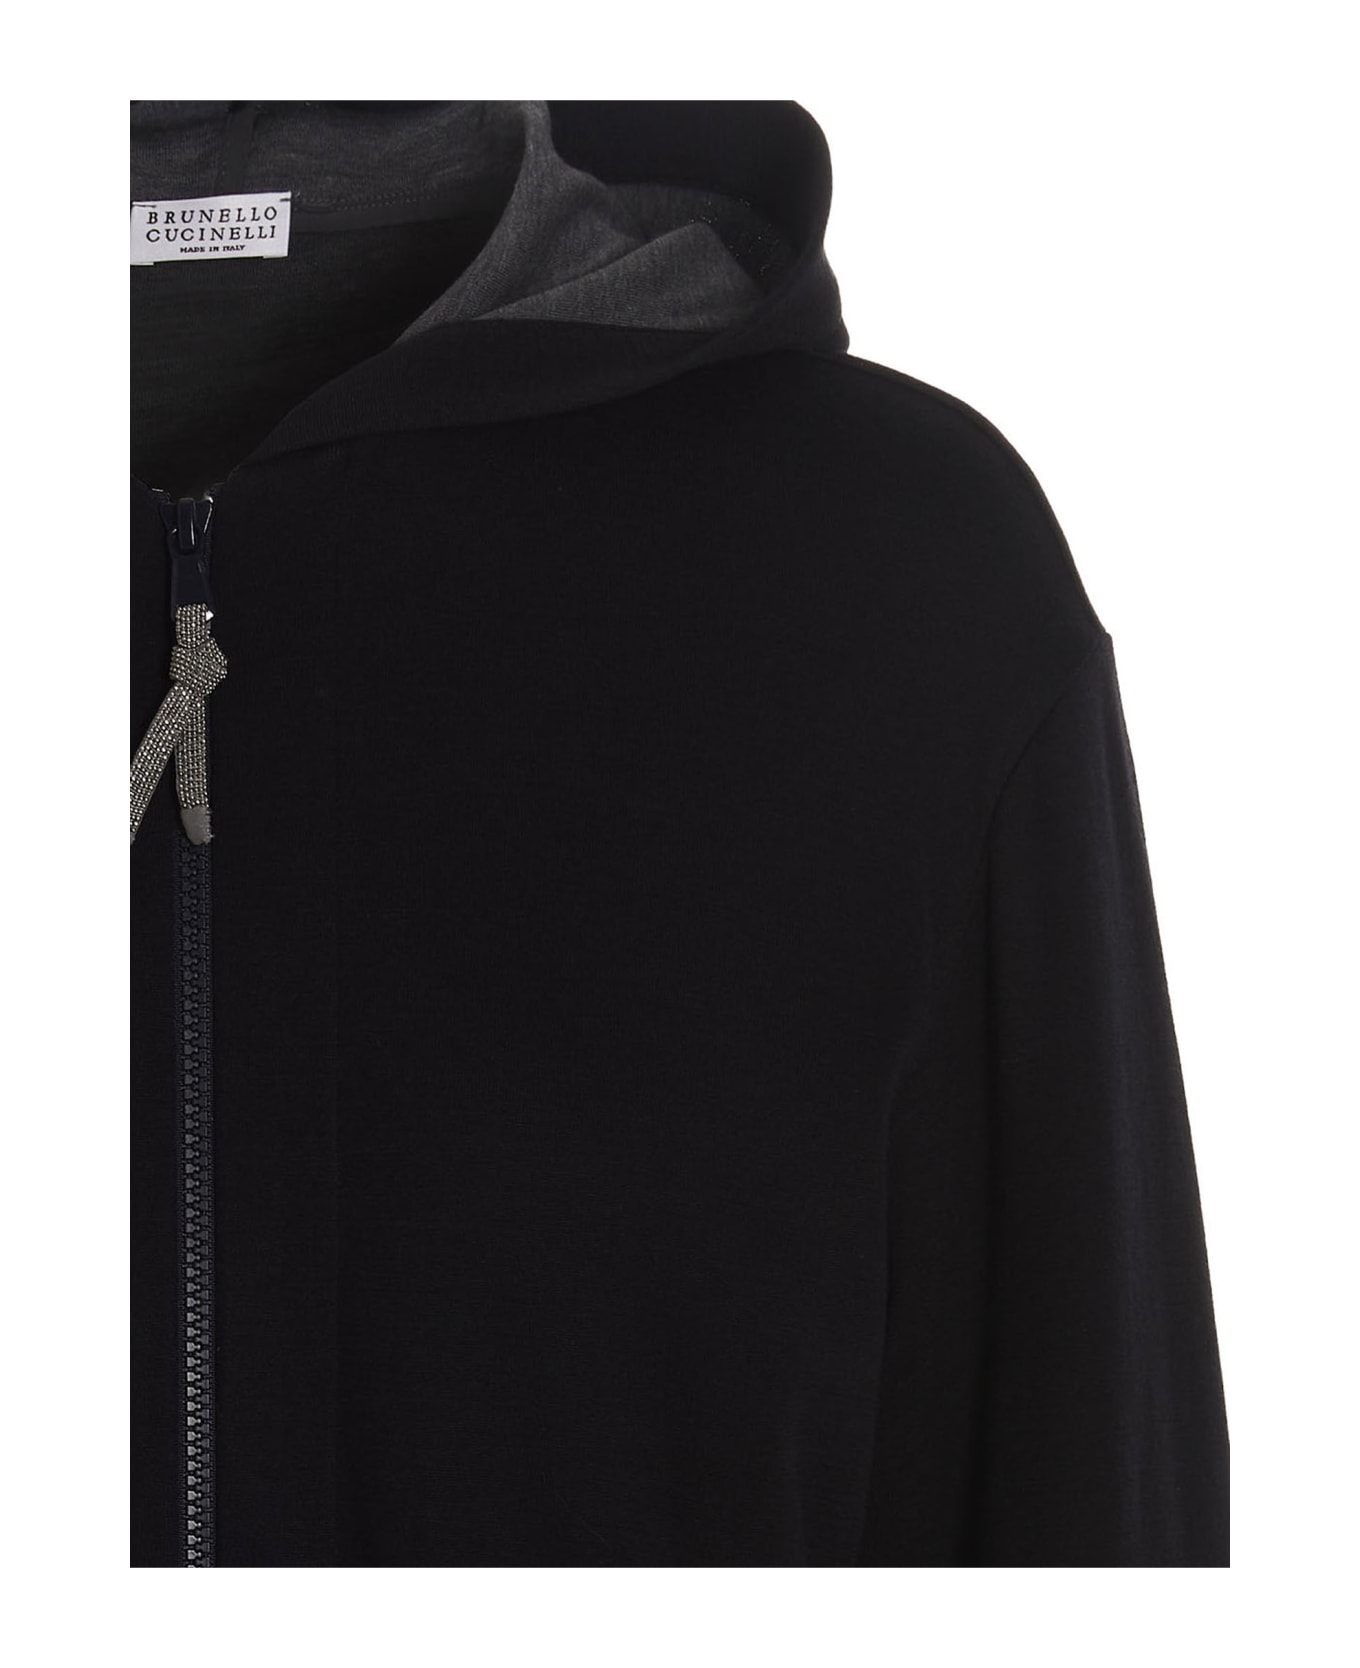 Brunello Cucinelli Cotton And Silk Sweatshirt With Hood - Blu ジャケット